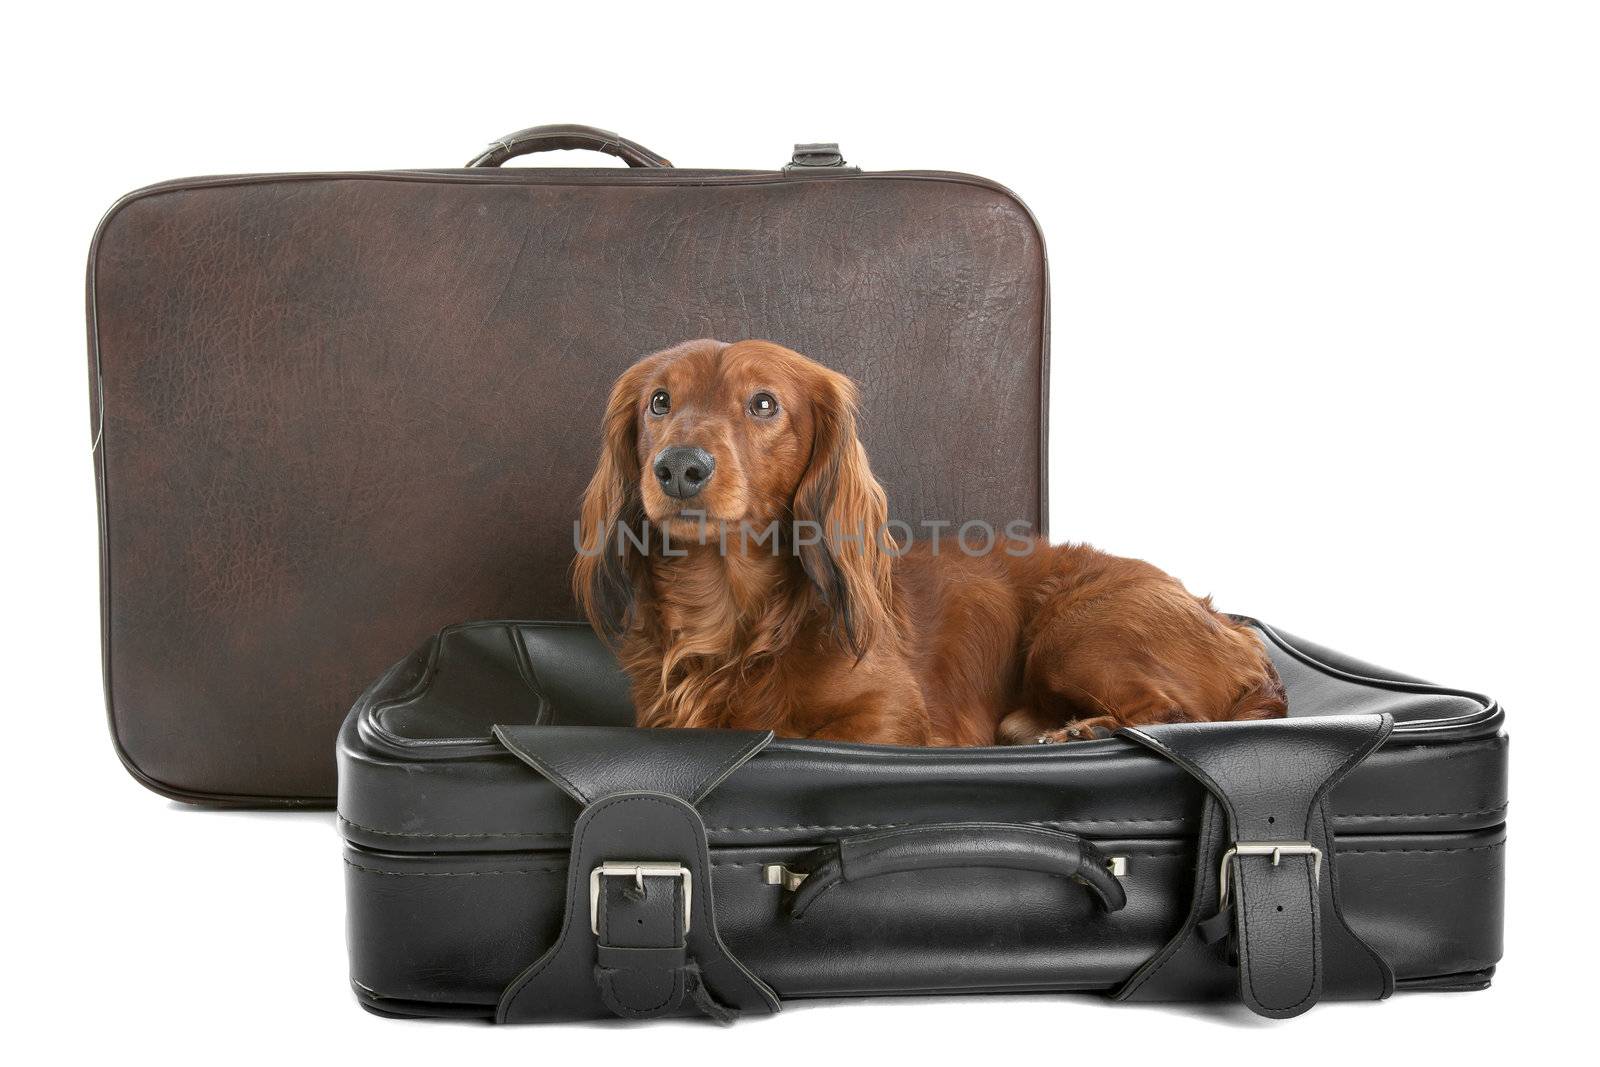 Dog on suitcase by eriklam